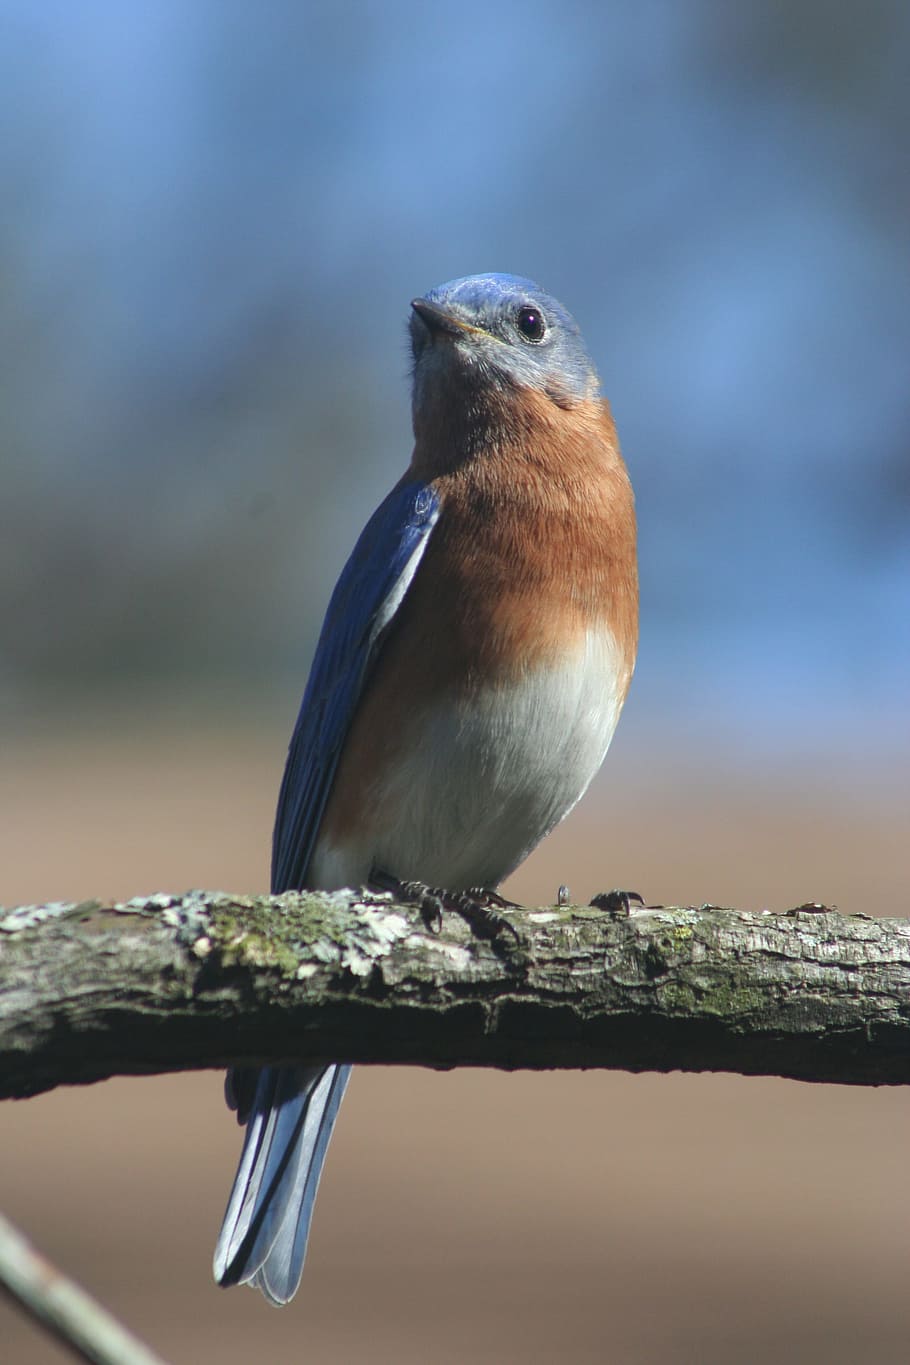 Eastern Bluebird, Ave, azul, bluebird, naturaleza, vida silvestre, pájaro cantor, animal, plumas, ala